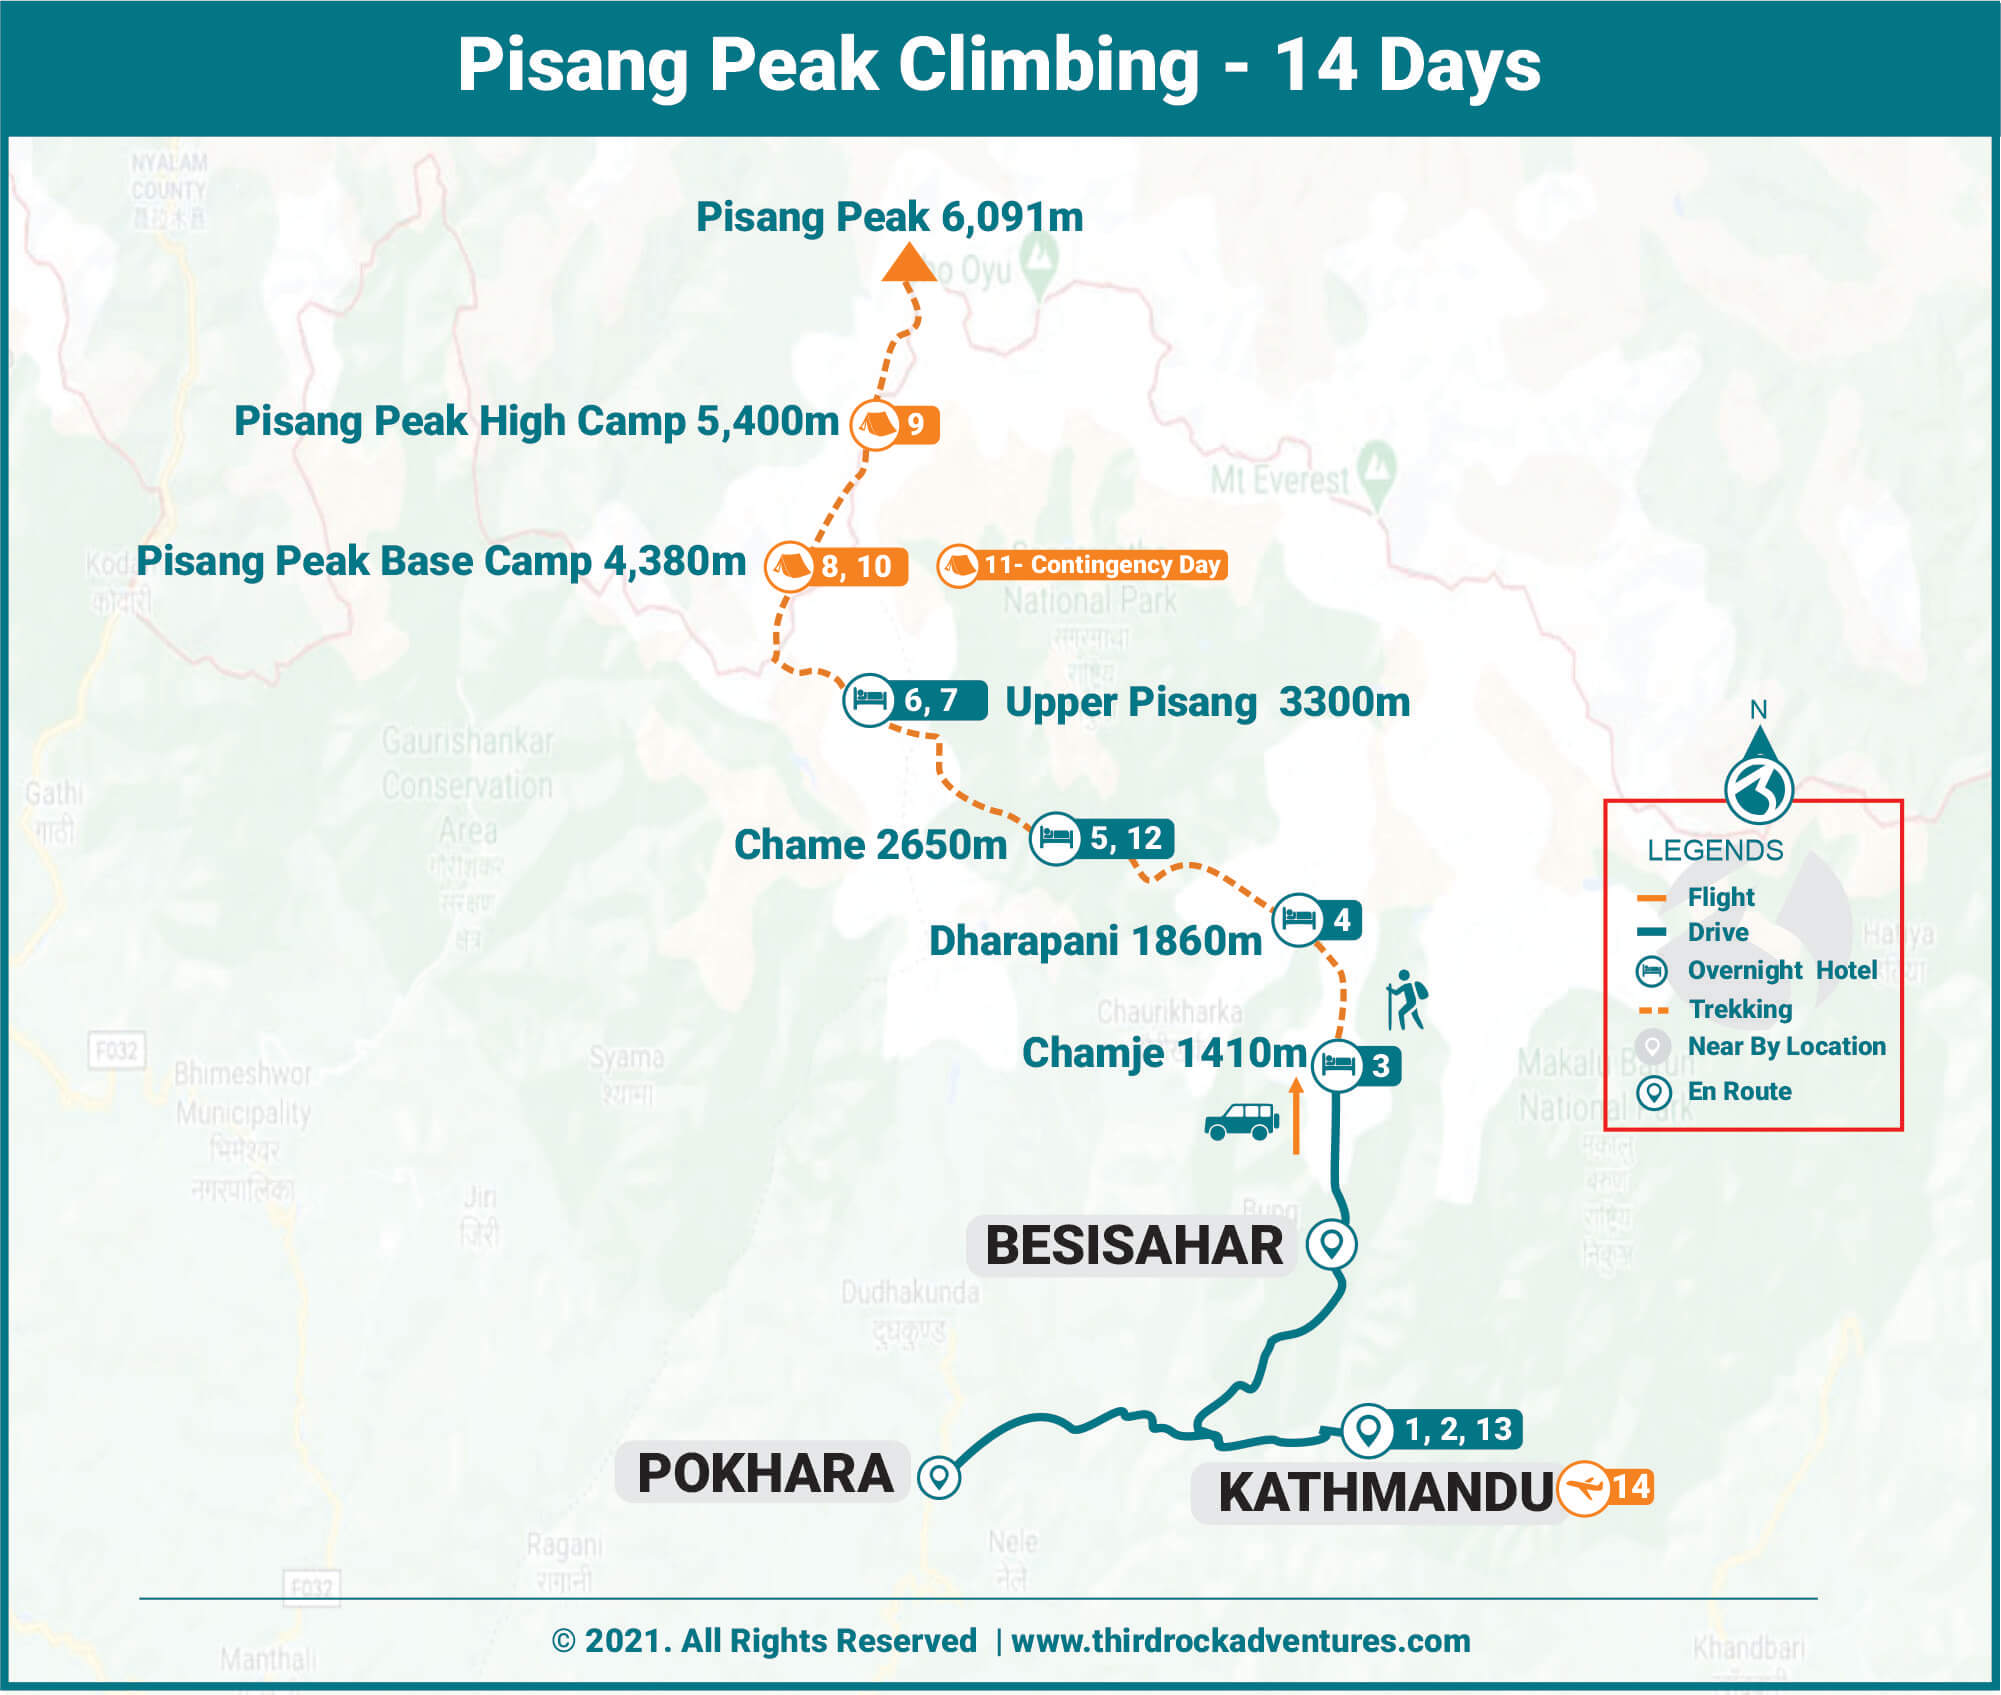 Pisang Peak Climbing 14 Days Route Map